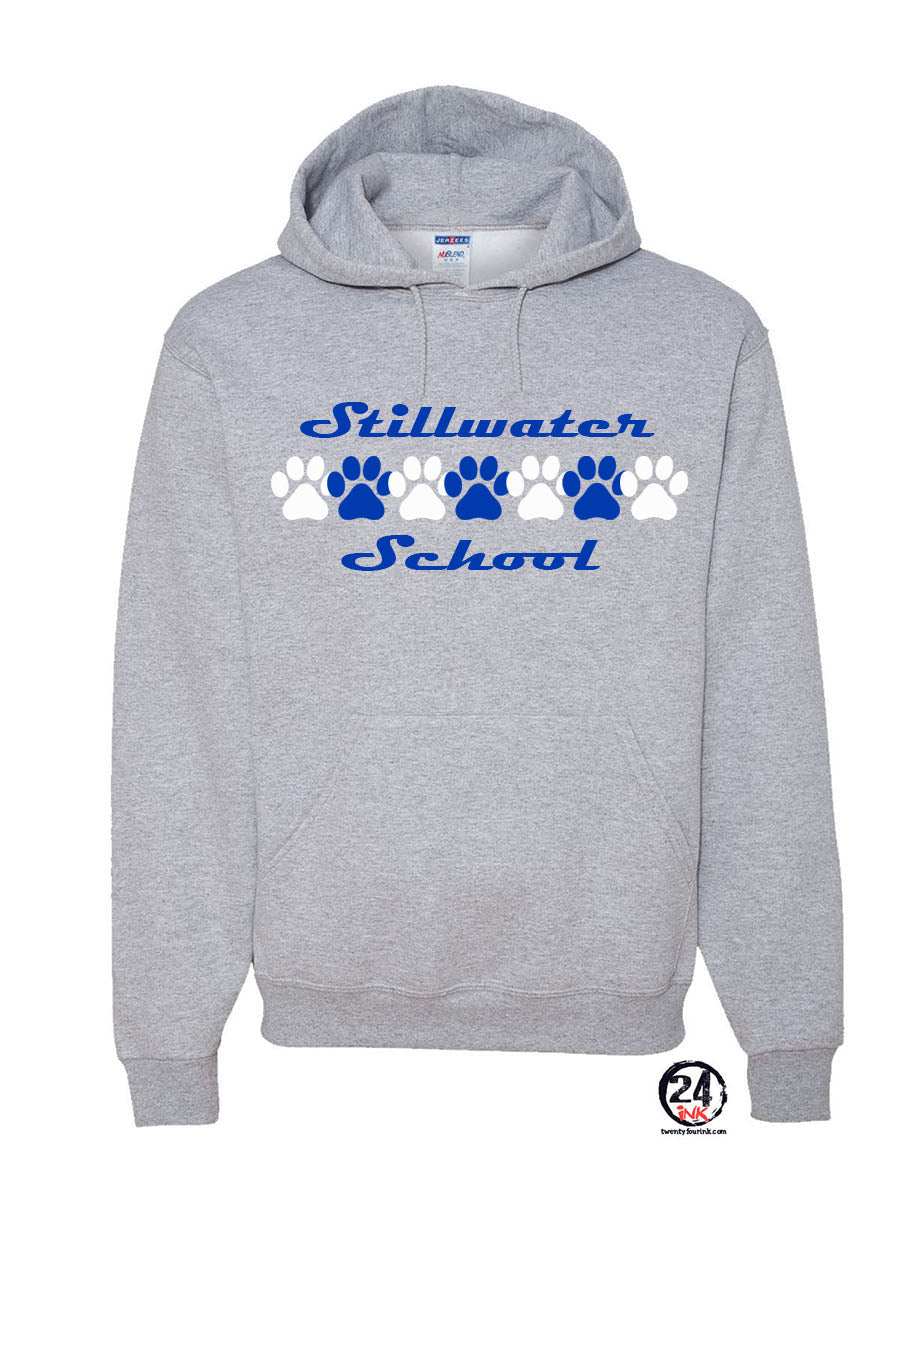 Stillwater Design 3 Hooded Sweatshirt